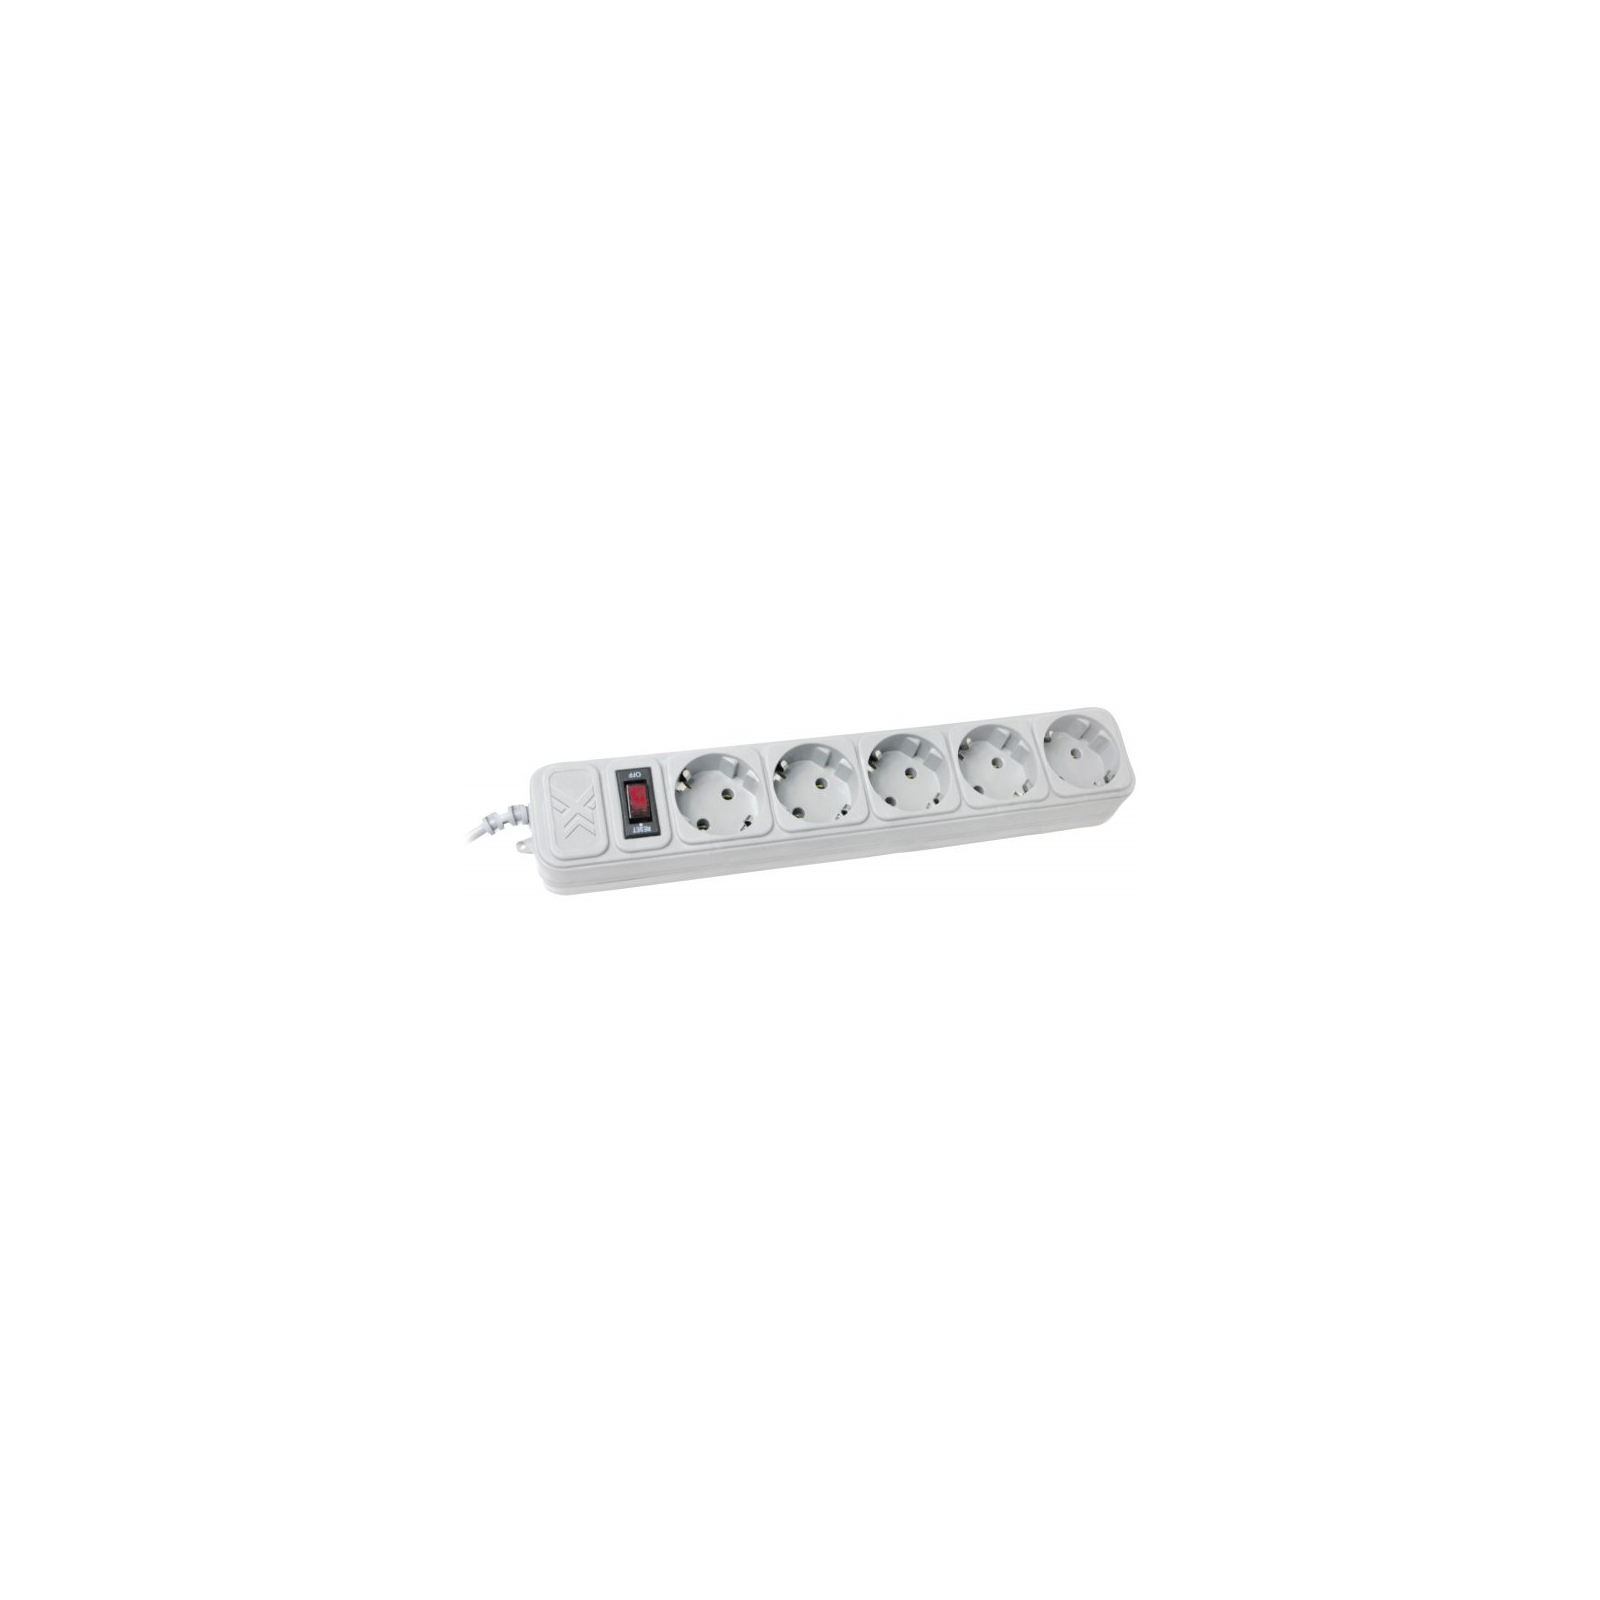 Сетевой фильтр питания Maxxter SPM5-G-15G grey, 4.5 м кабель, 5 розеток (SPM5-G-15G)